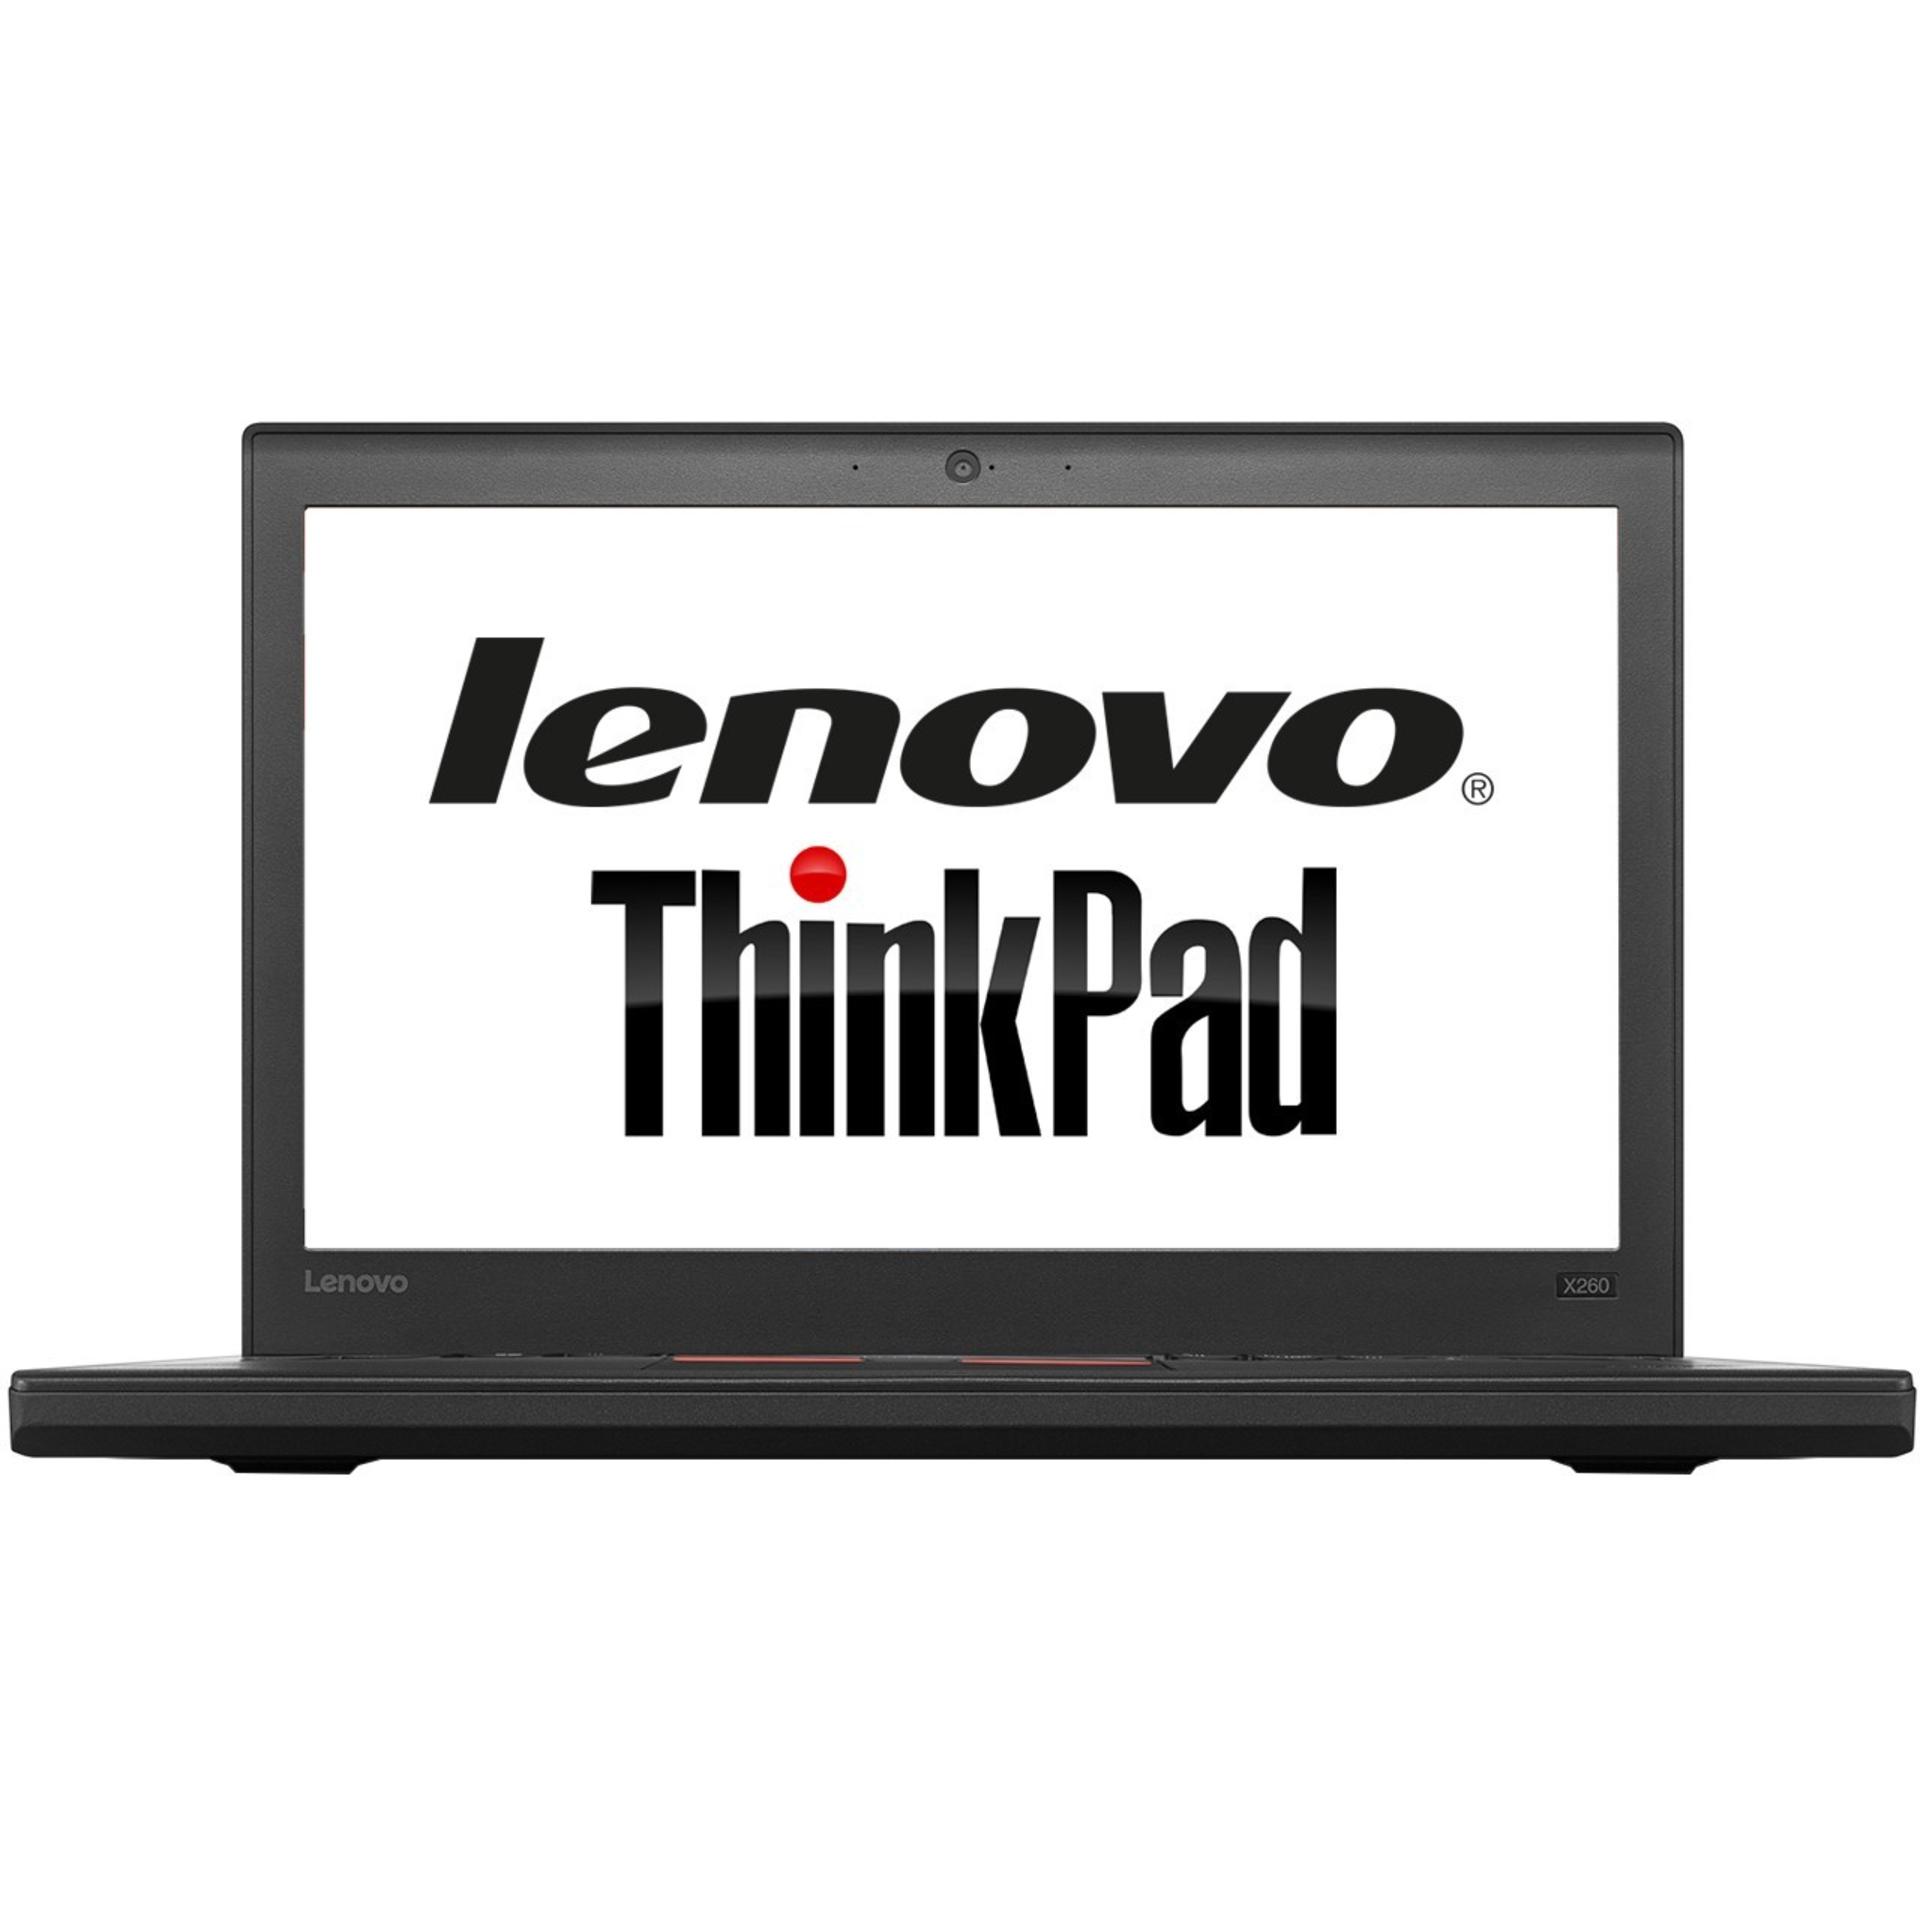 ThinkPad X260 لنوو - Core i7 8GB 512GB-0